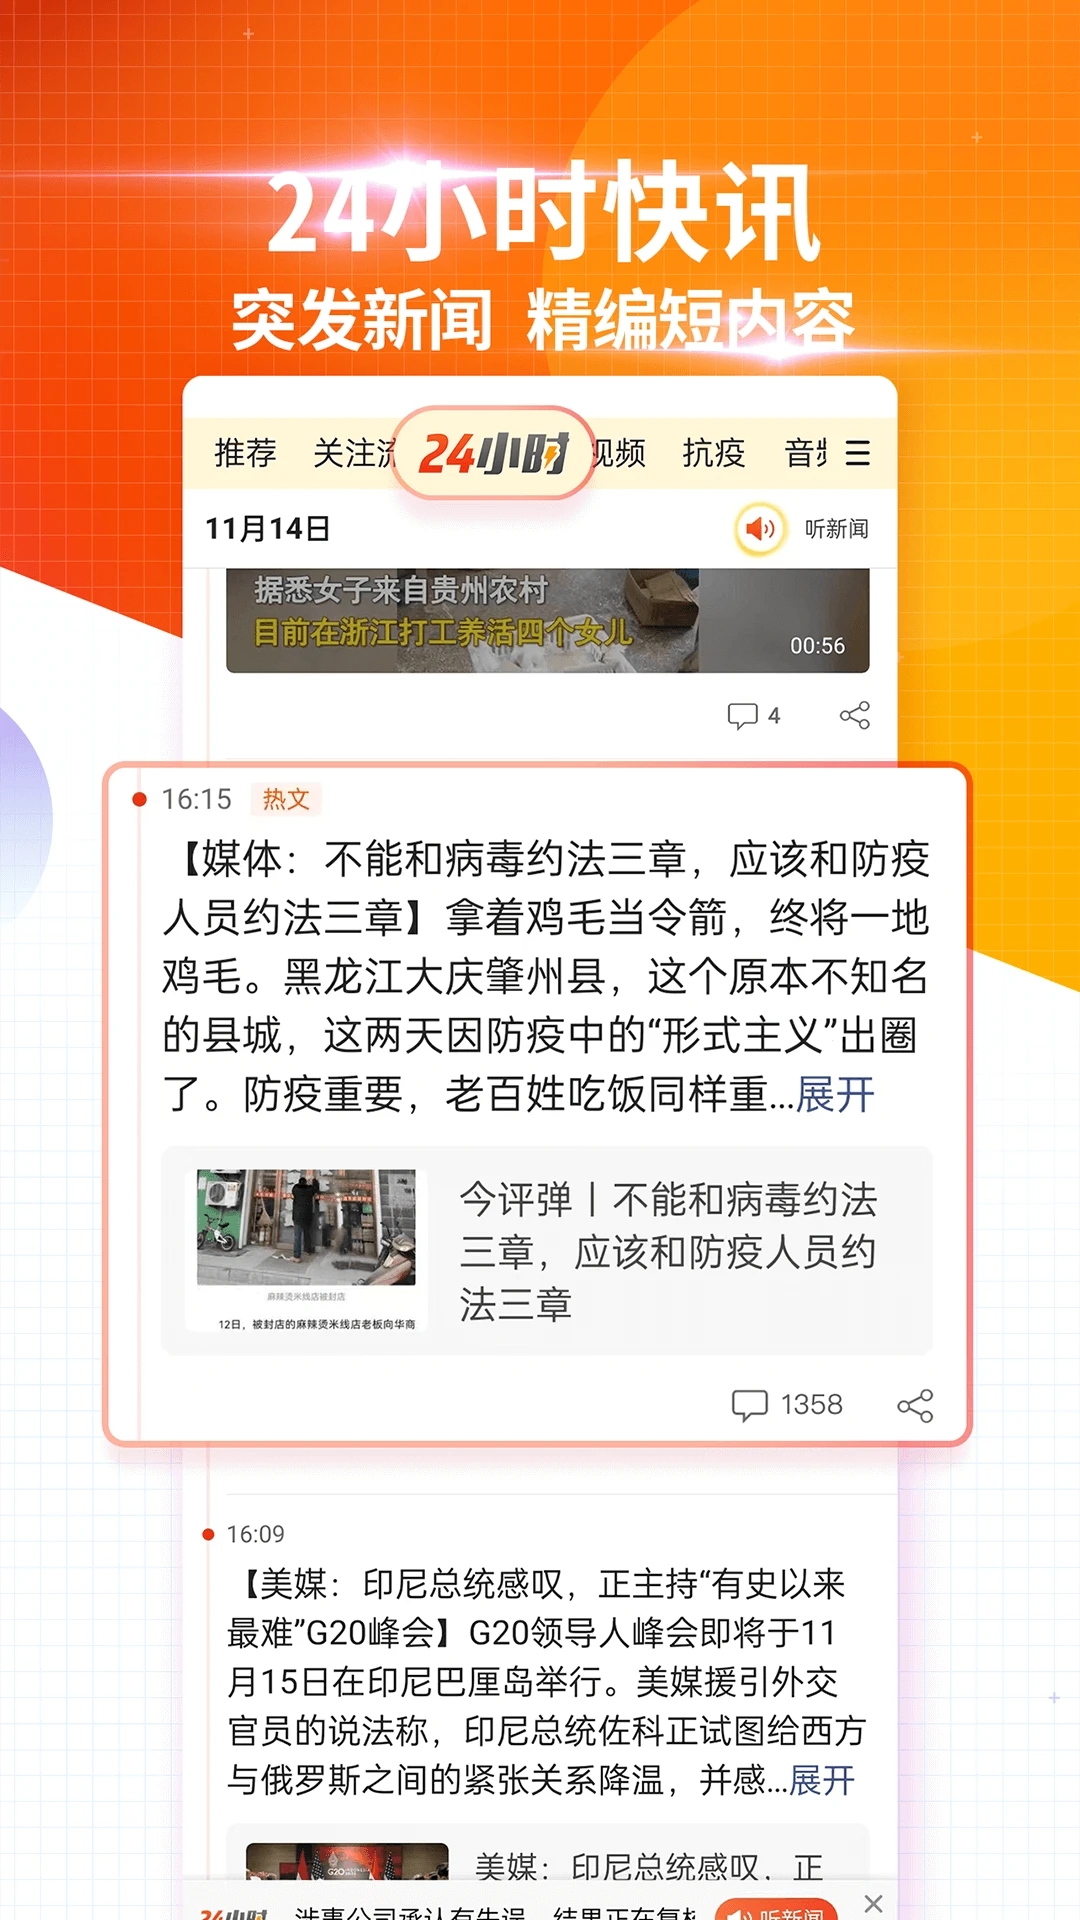 搜狐新闻资讯版app下载安装